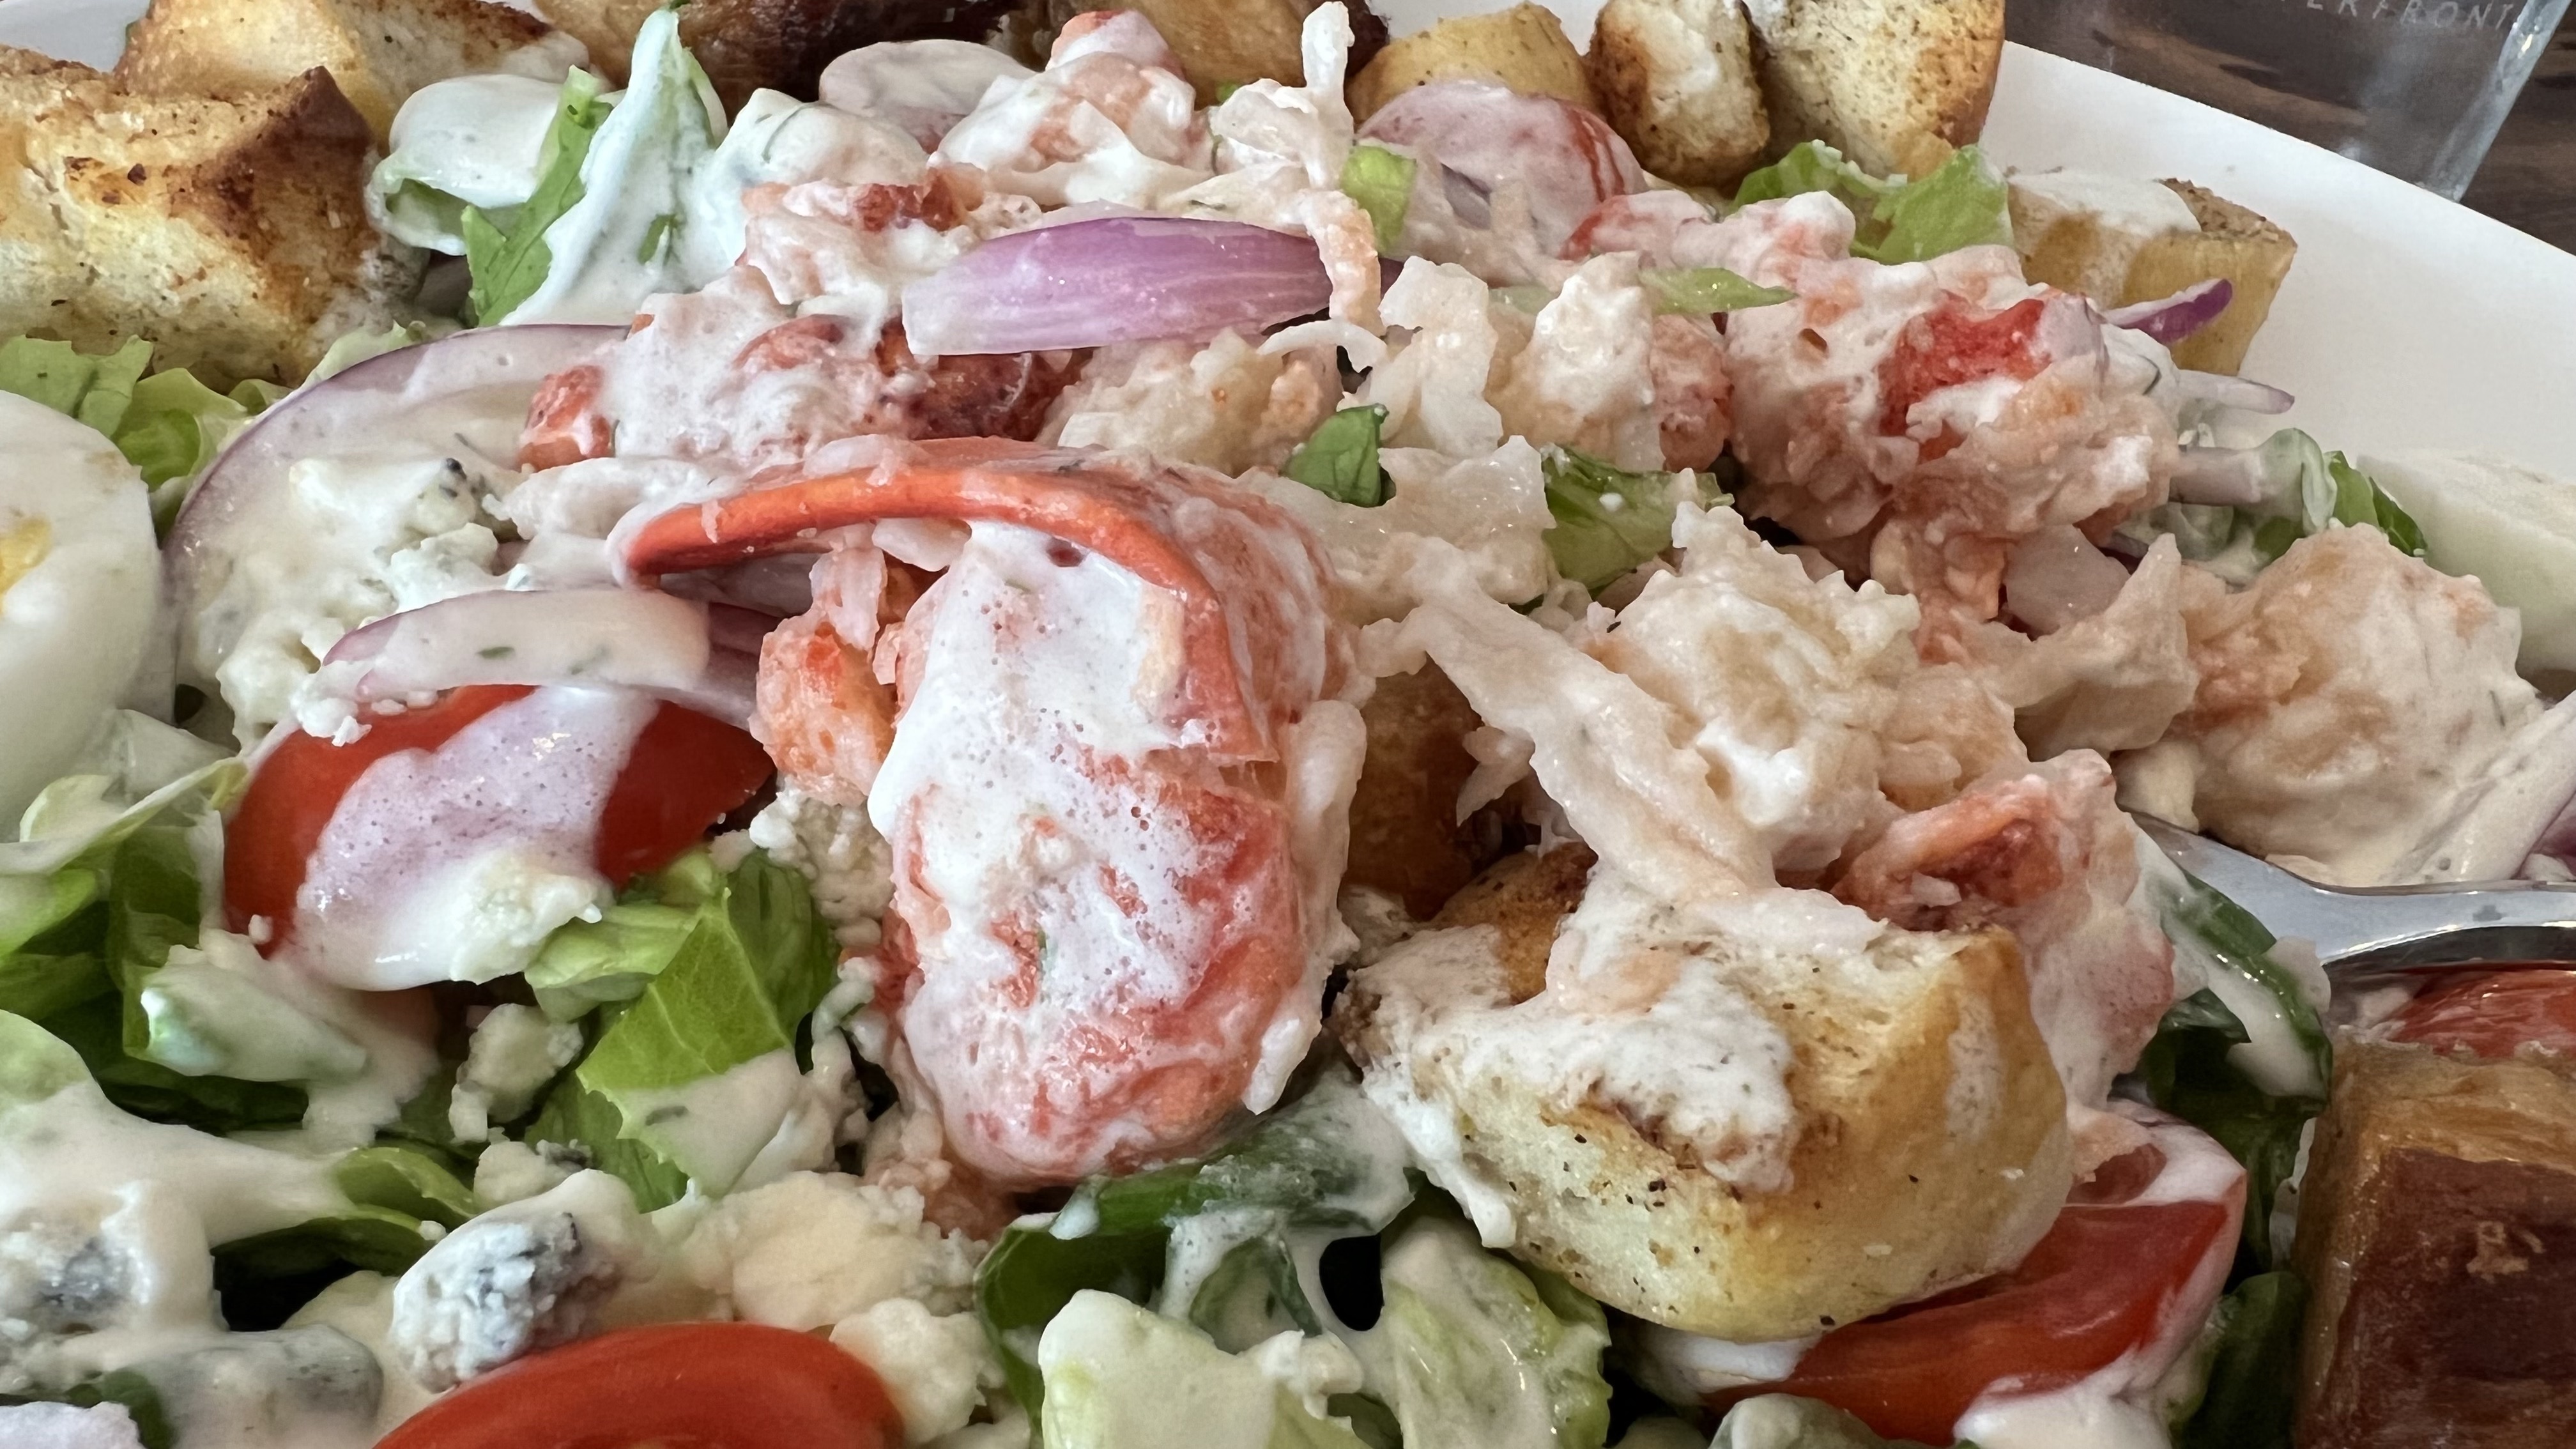  pork belly lobster salad